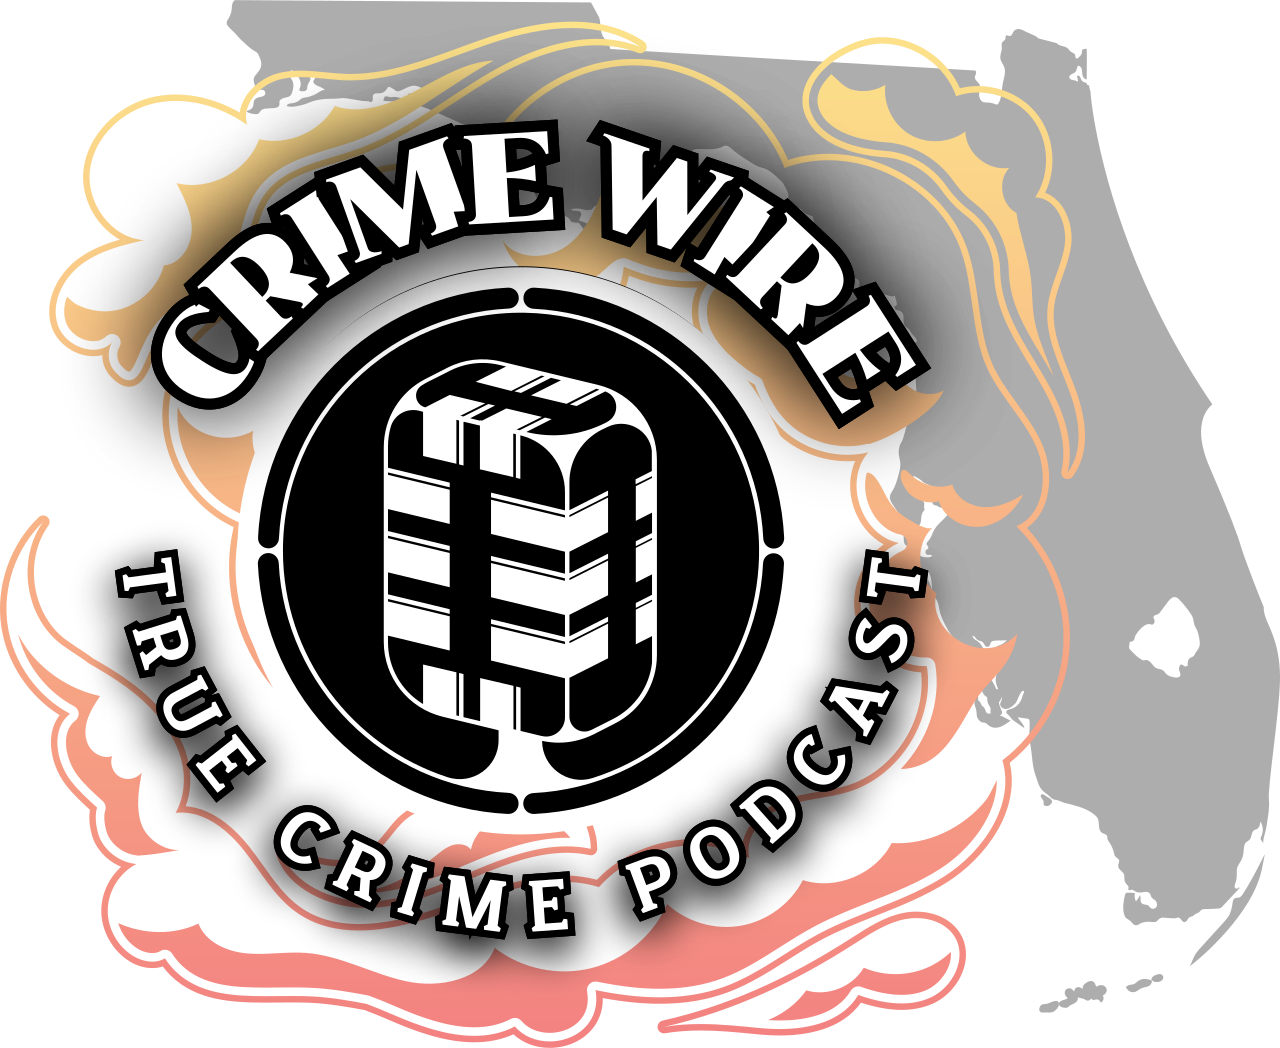 CRIME WIRE's logo